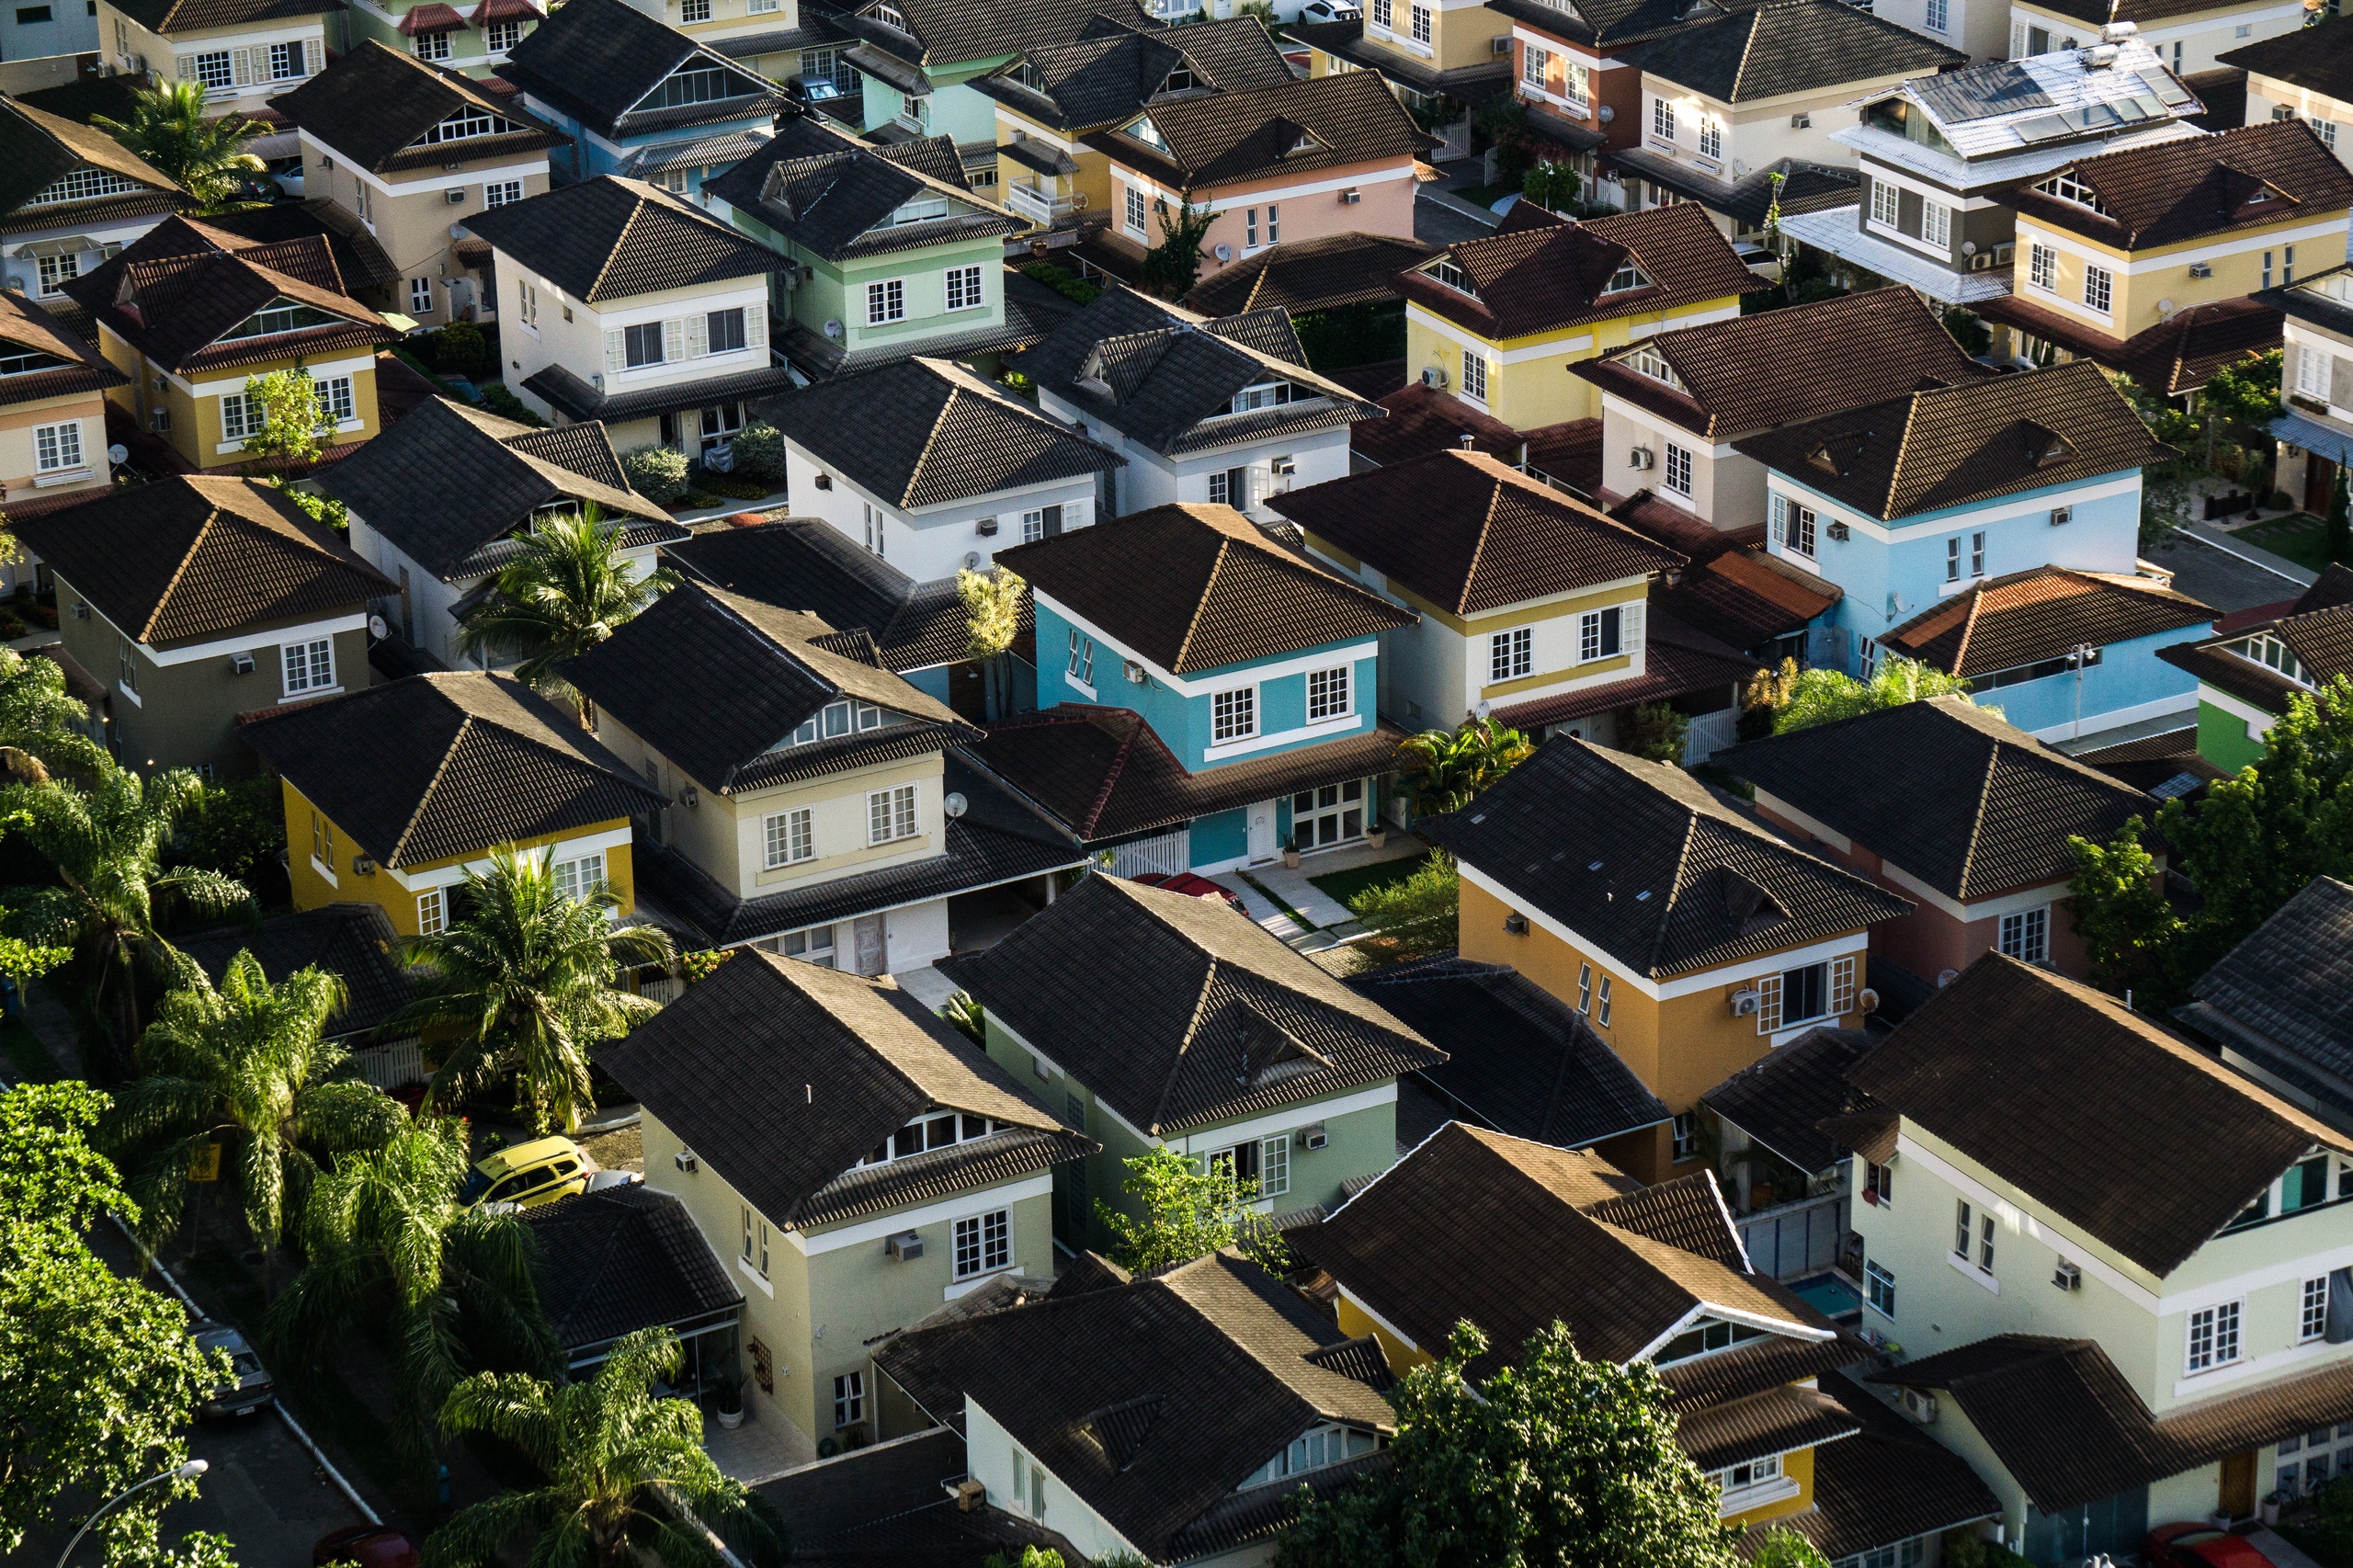 'De huizenprijzen in Amsterdam, Haarlem en Den Haag zijn gedaald, maar in Zeeland en het oosten en noorden stijgen de prijzen nog', zegt hoogleraar Peter Boelhouwer van de TU Delft.